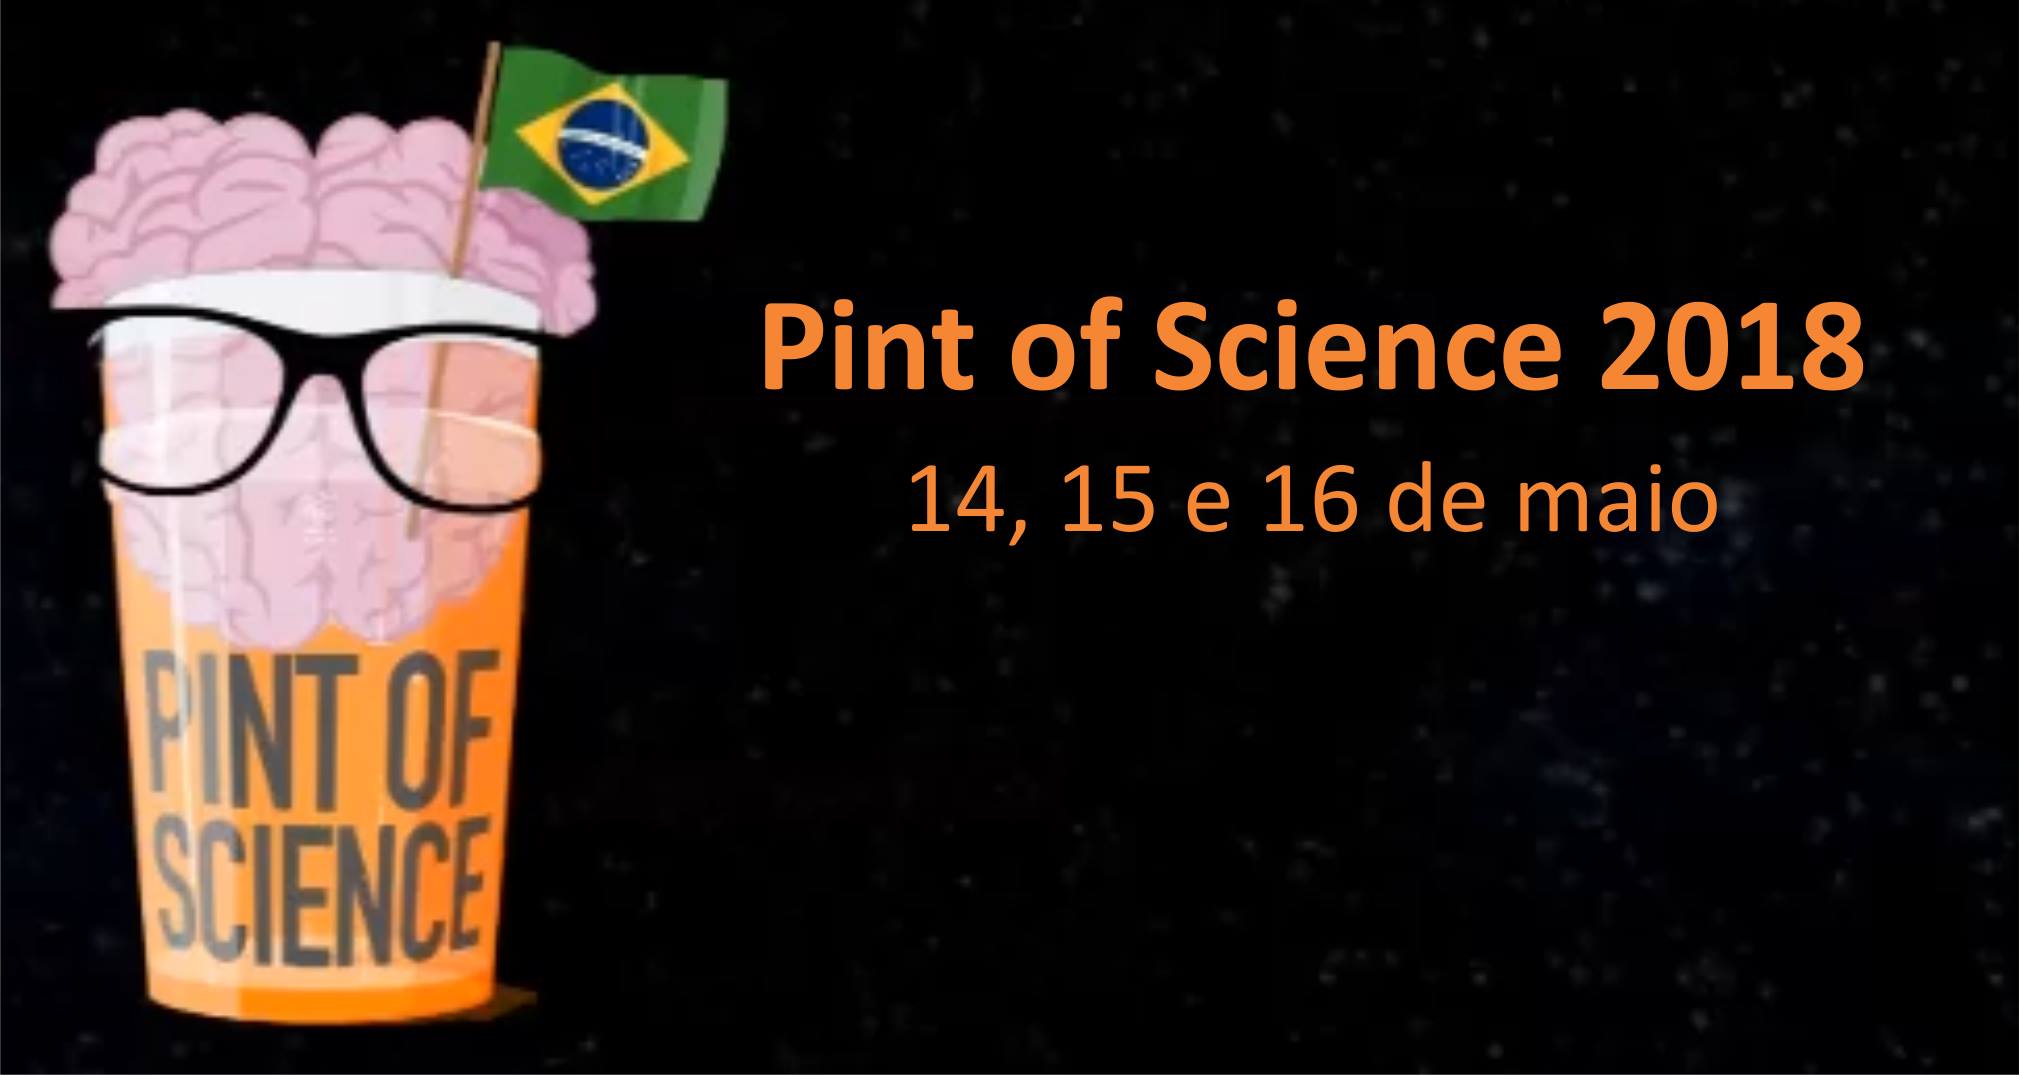 Festival Pint of Science chega a Florianópolis | Imagem Divulgação